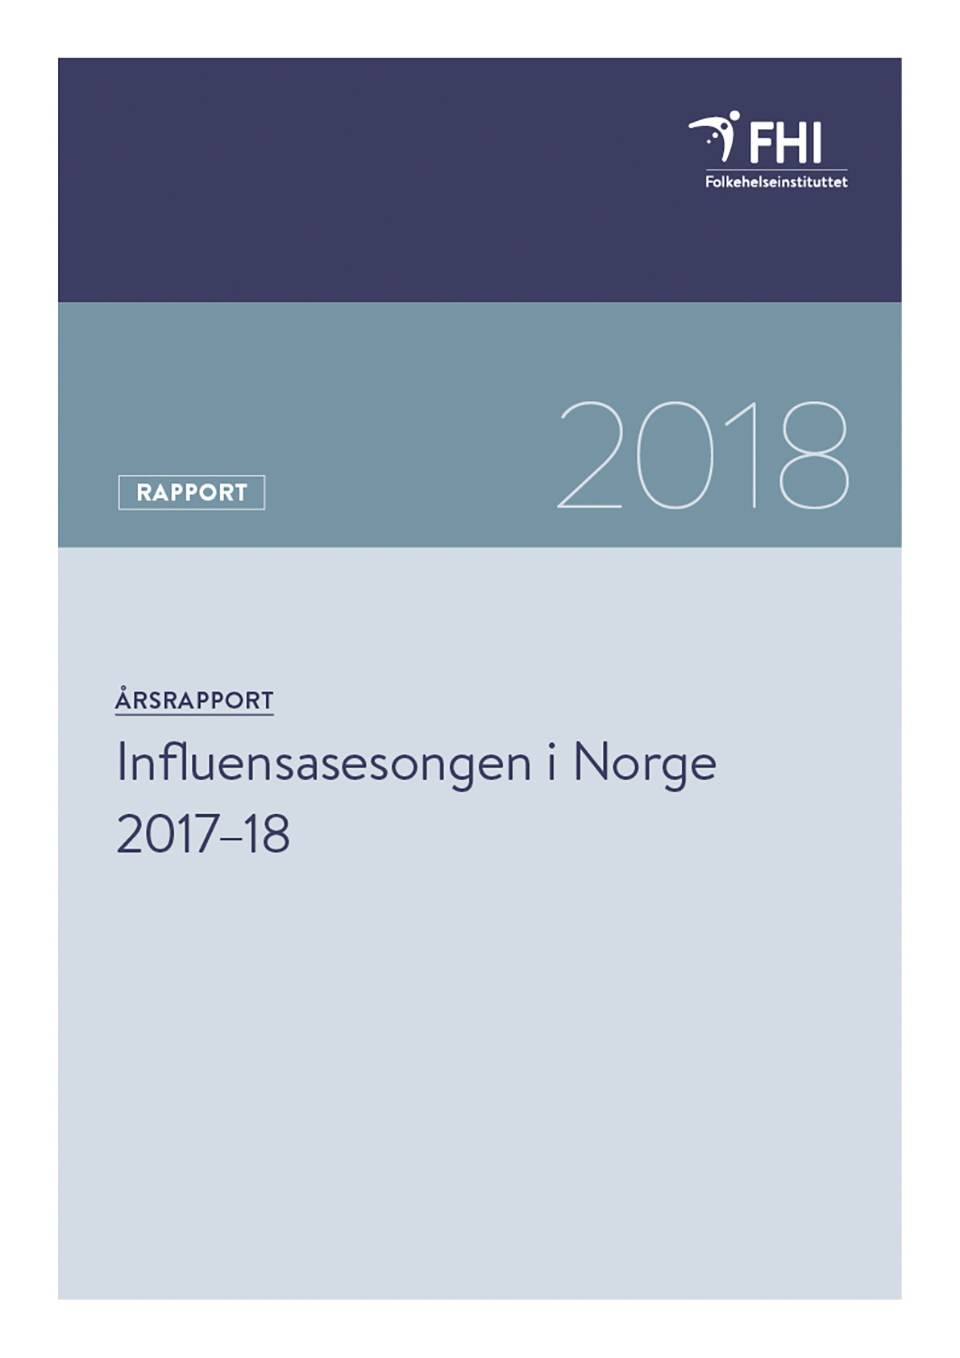 Influensasesongen i Norge 2017-18_forside WEB.jpg